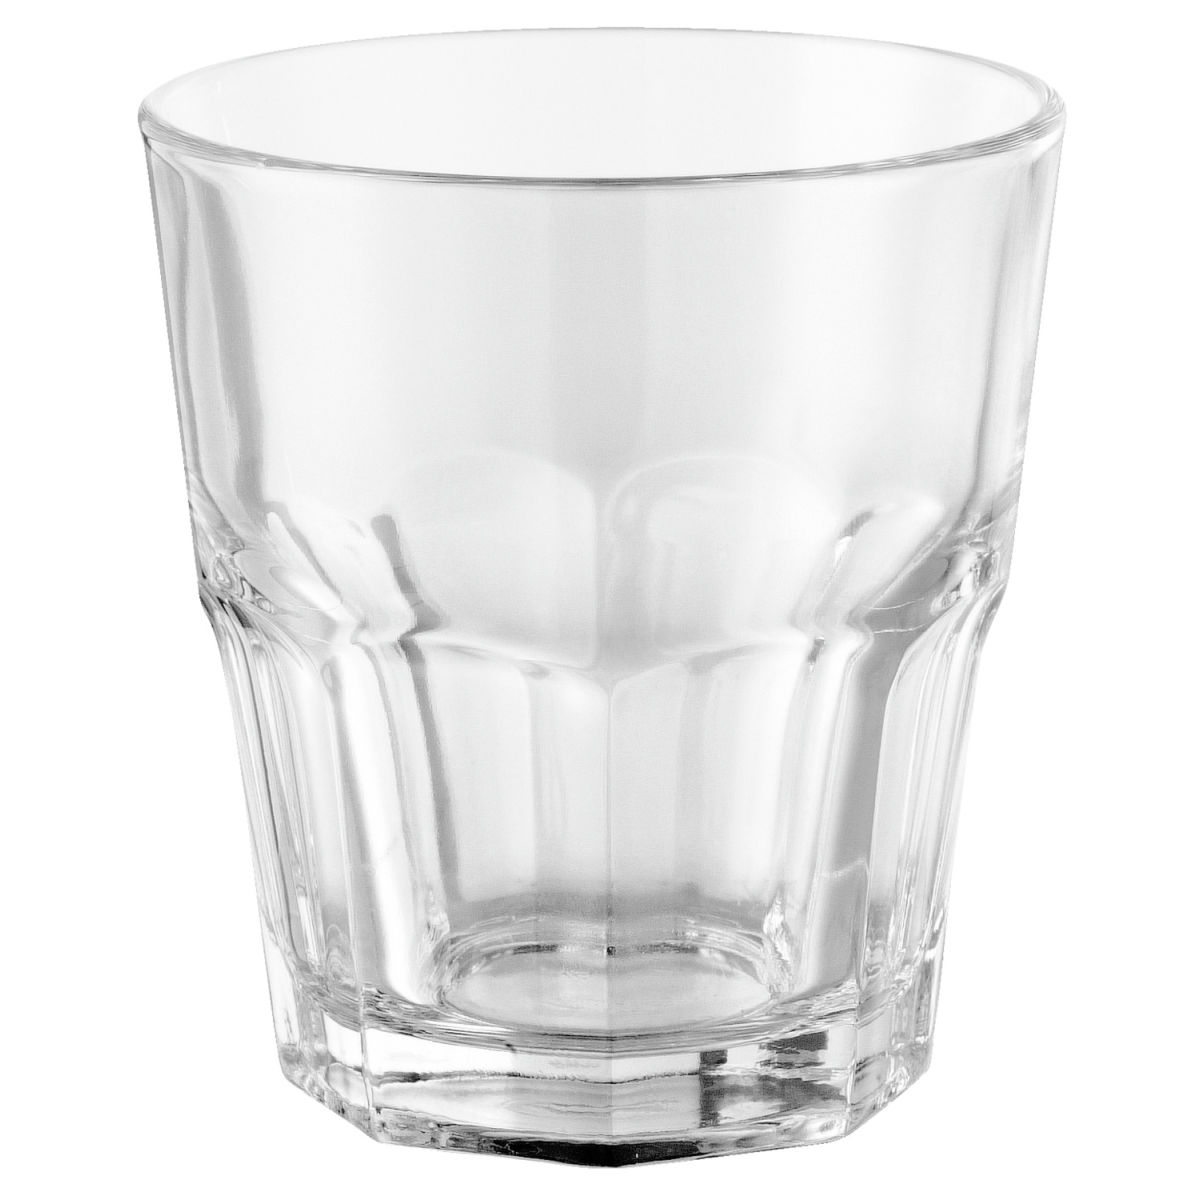 Pasabahçe Glas Casablanca stapelbaar; 250ml, 8.5x9 cm (ØxH); transparant; 12 stuk / verpakking